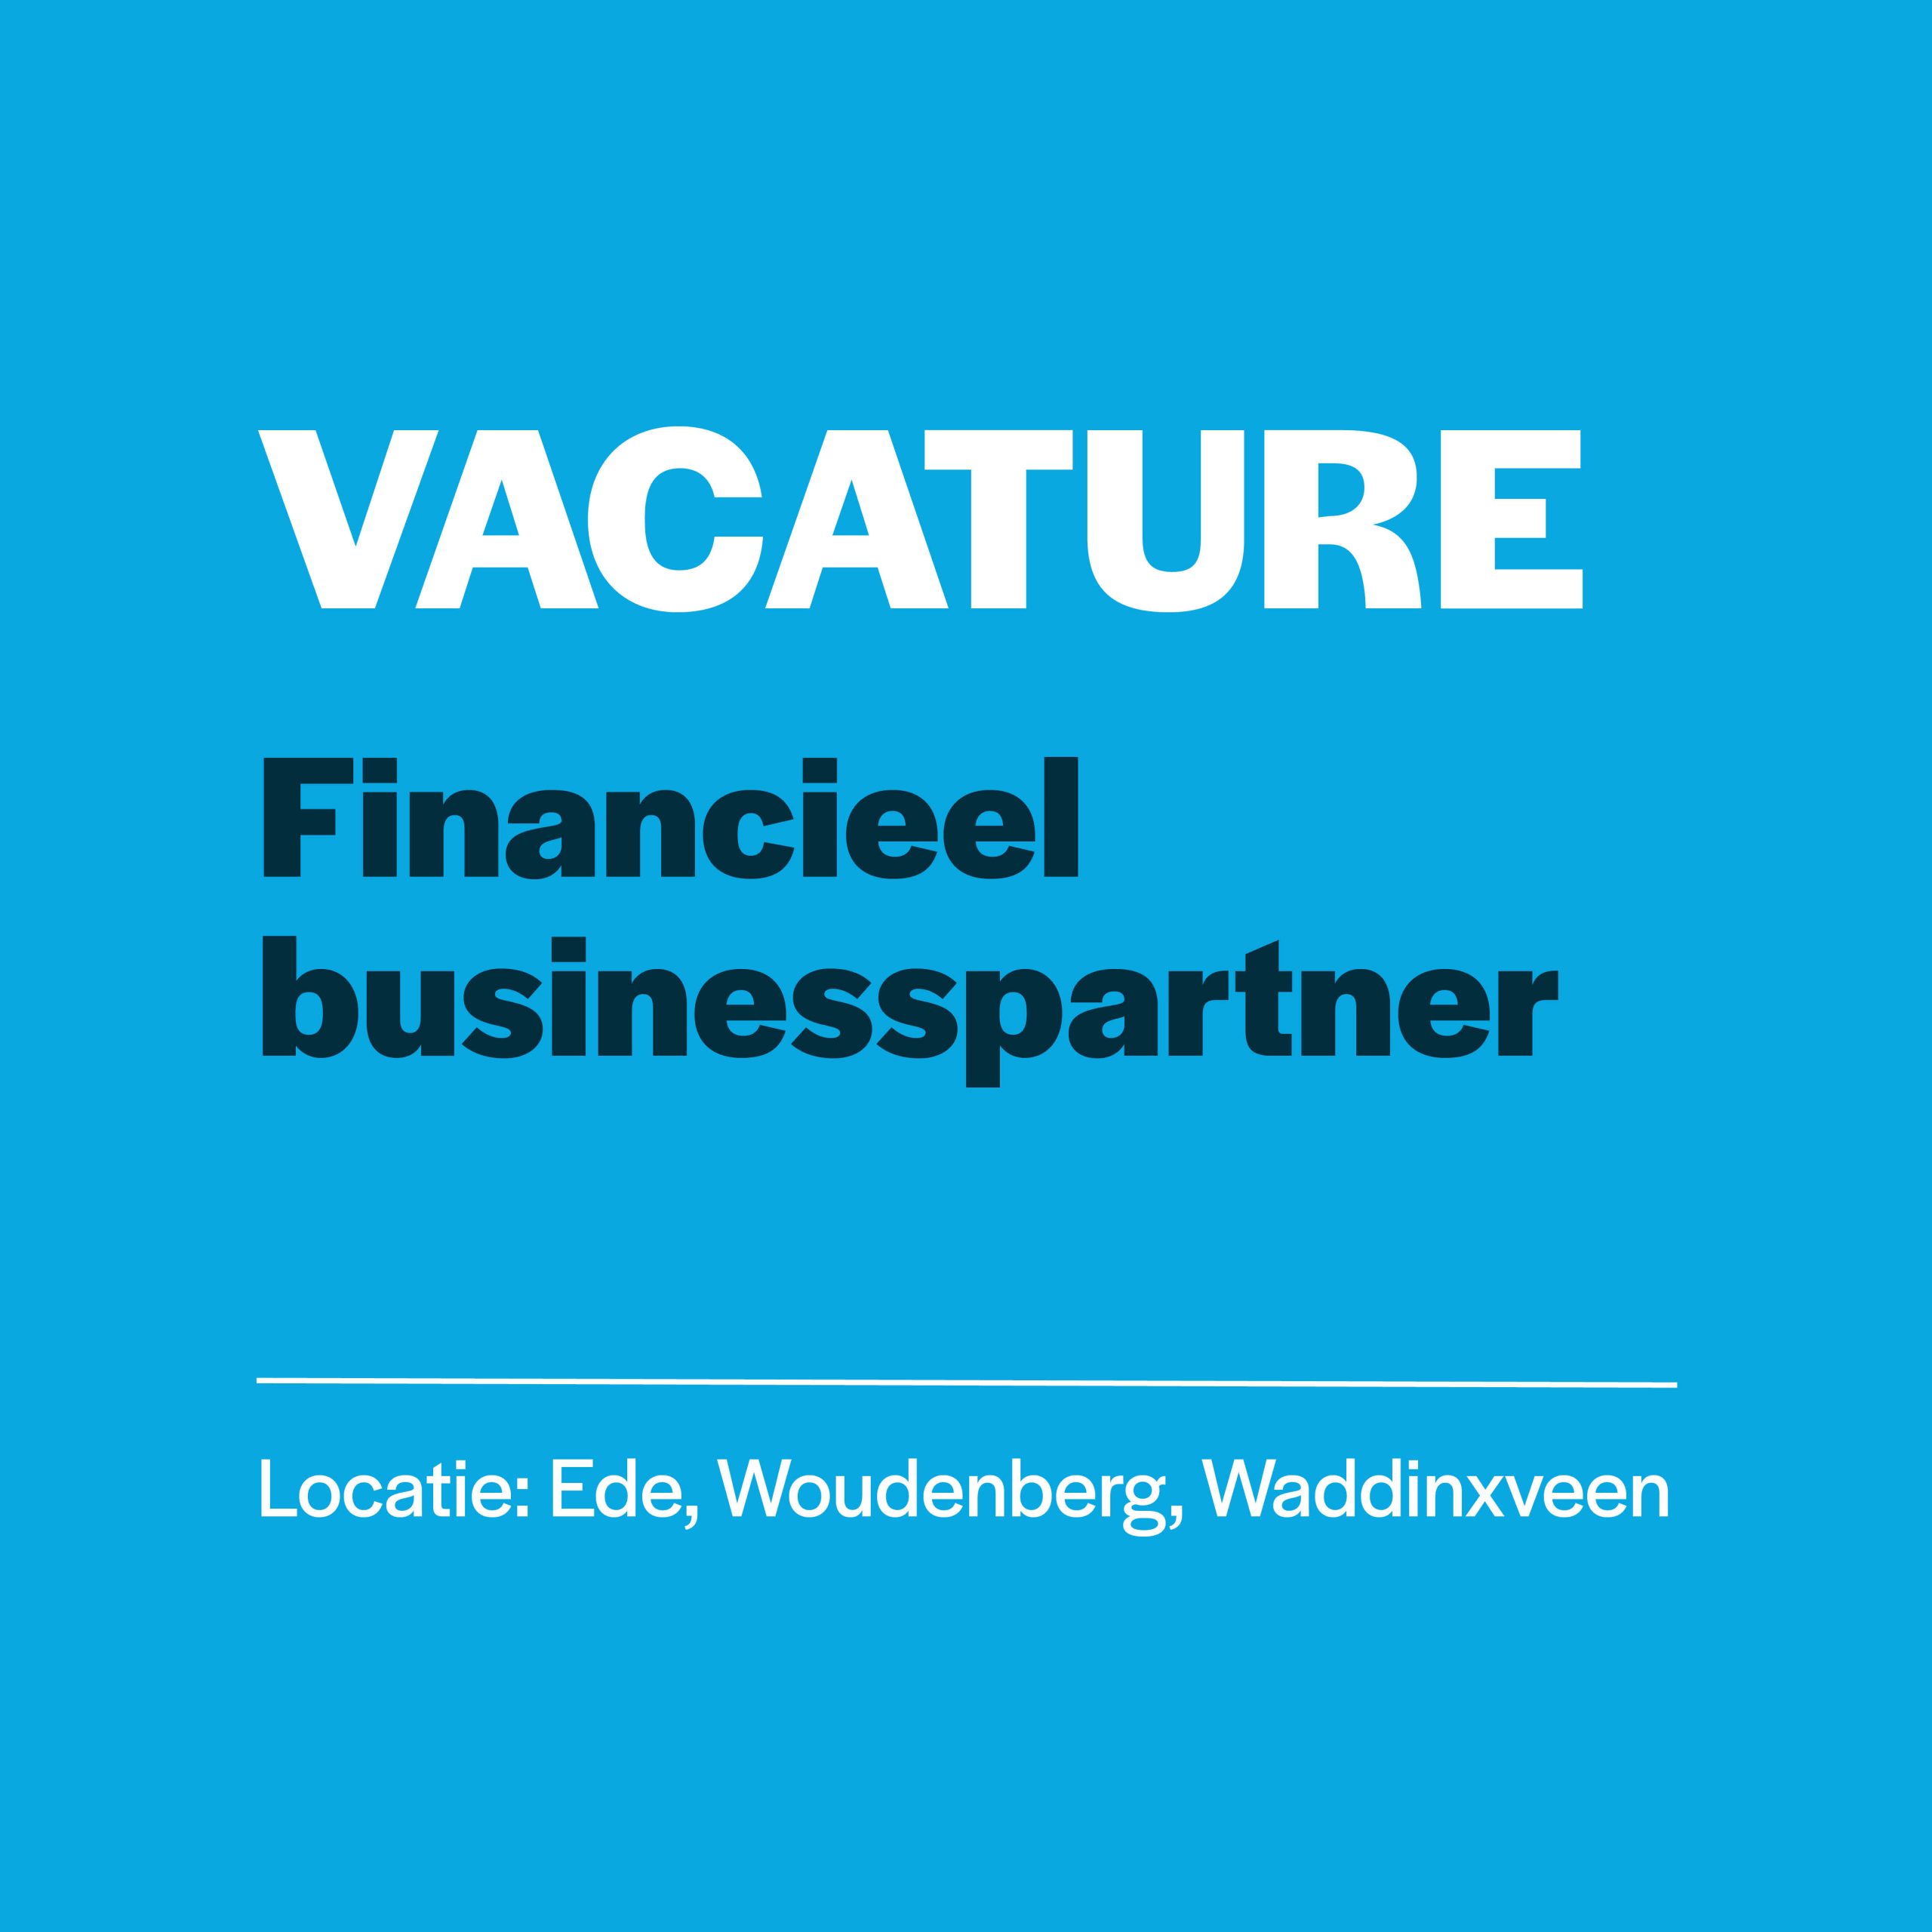 Vacature financieel businesspartner